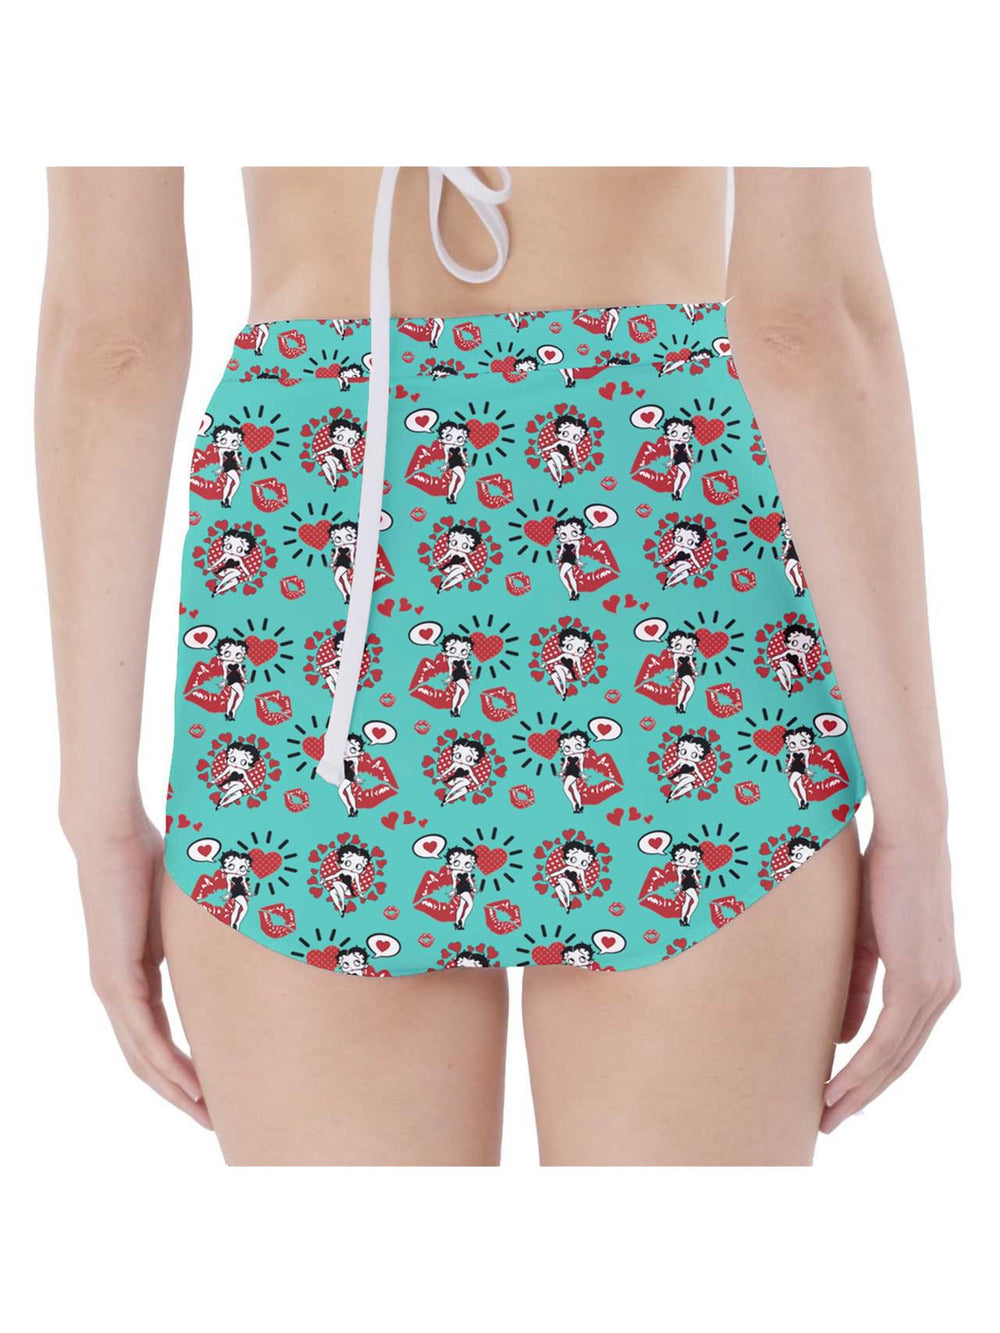 Betty Boop High-Waisted Bikini Bottoms